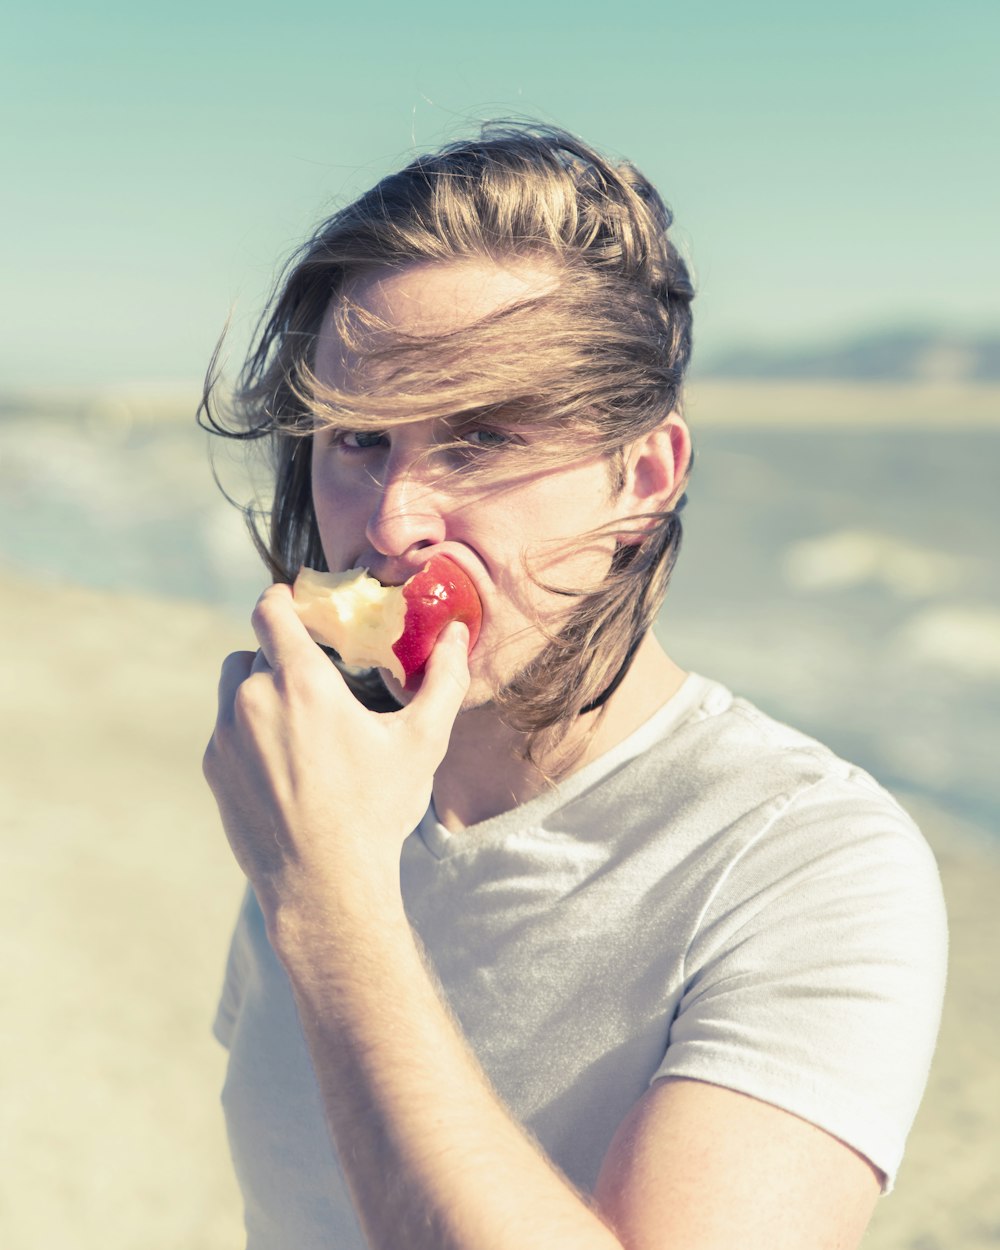 a woman eating an apple on the beach